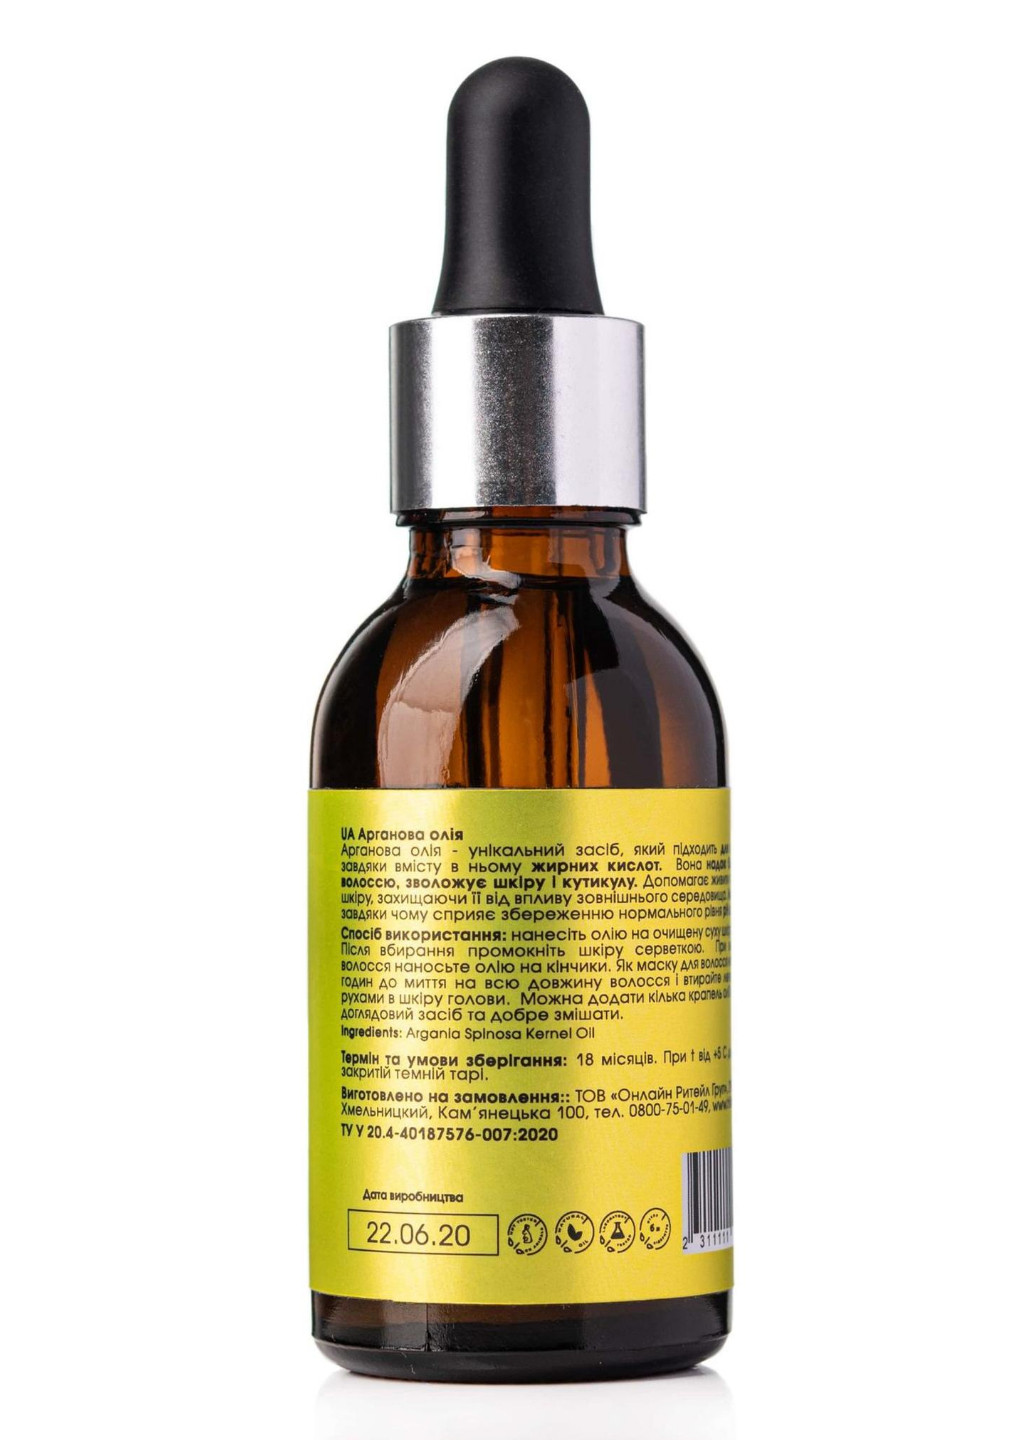 Органическое аргановое масло + Натуральное масло жожоба для лица и волос Hillary (256674321)